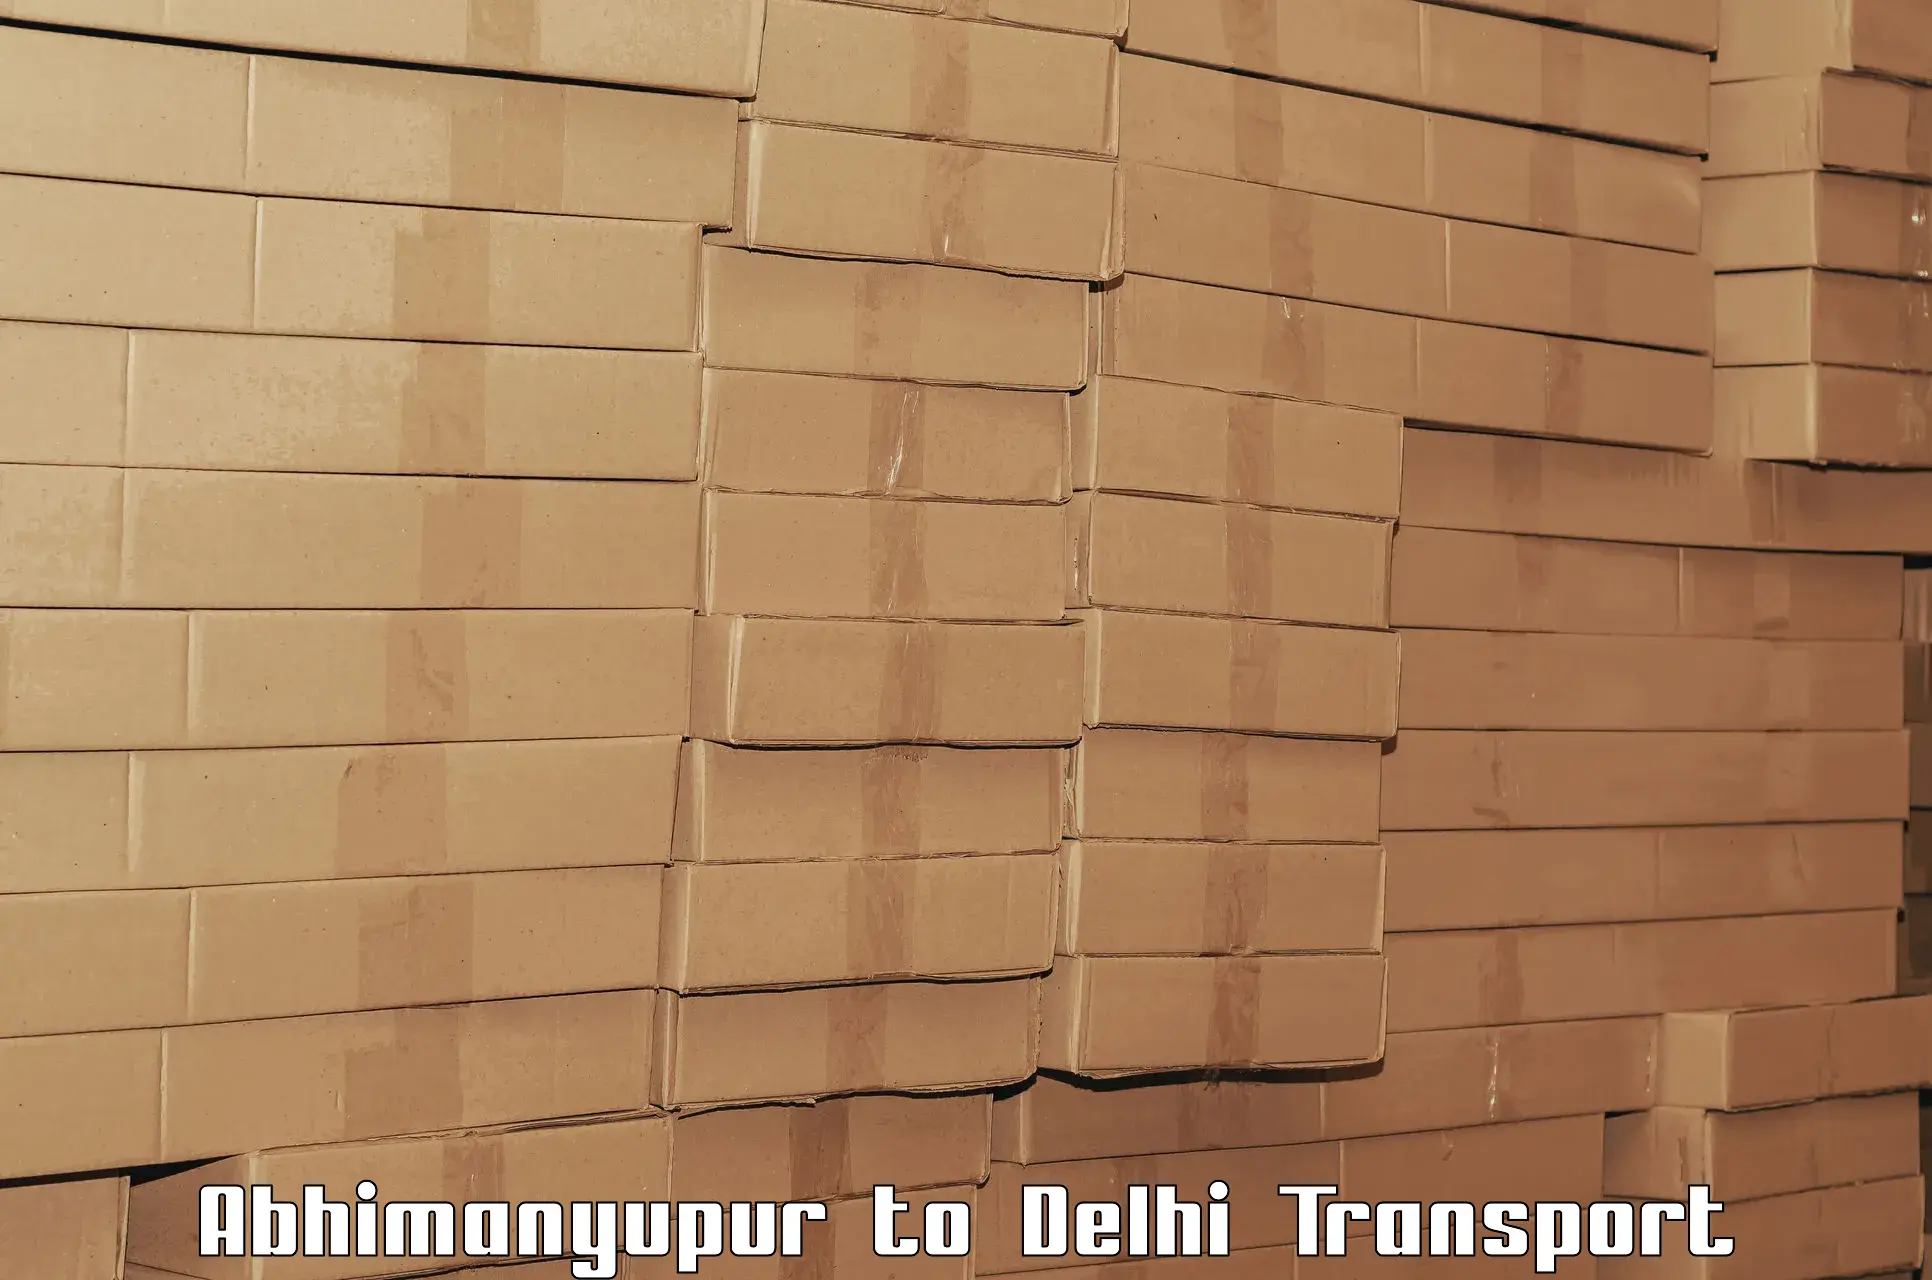 Online transport booking Abhimanyupur to Kalkaji